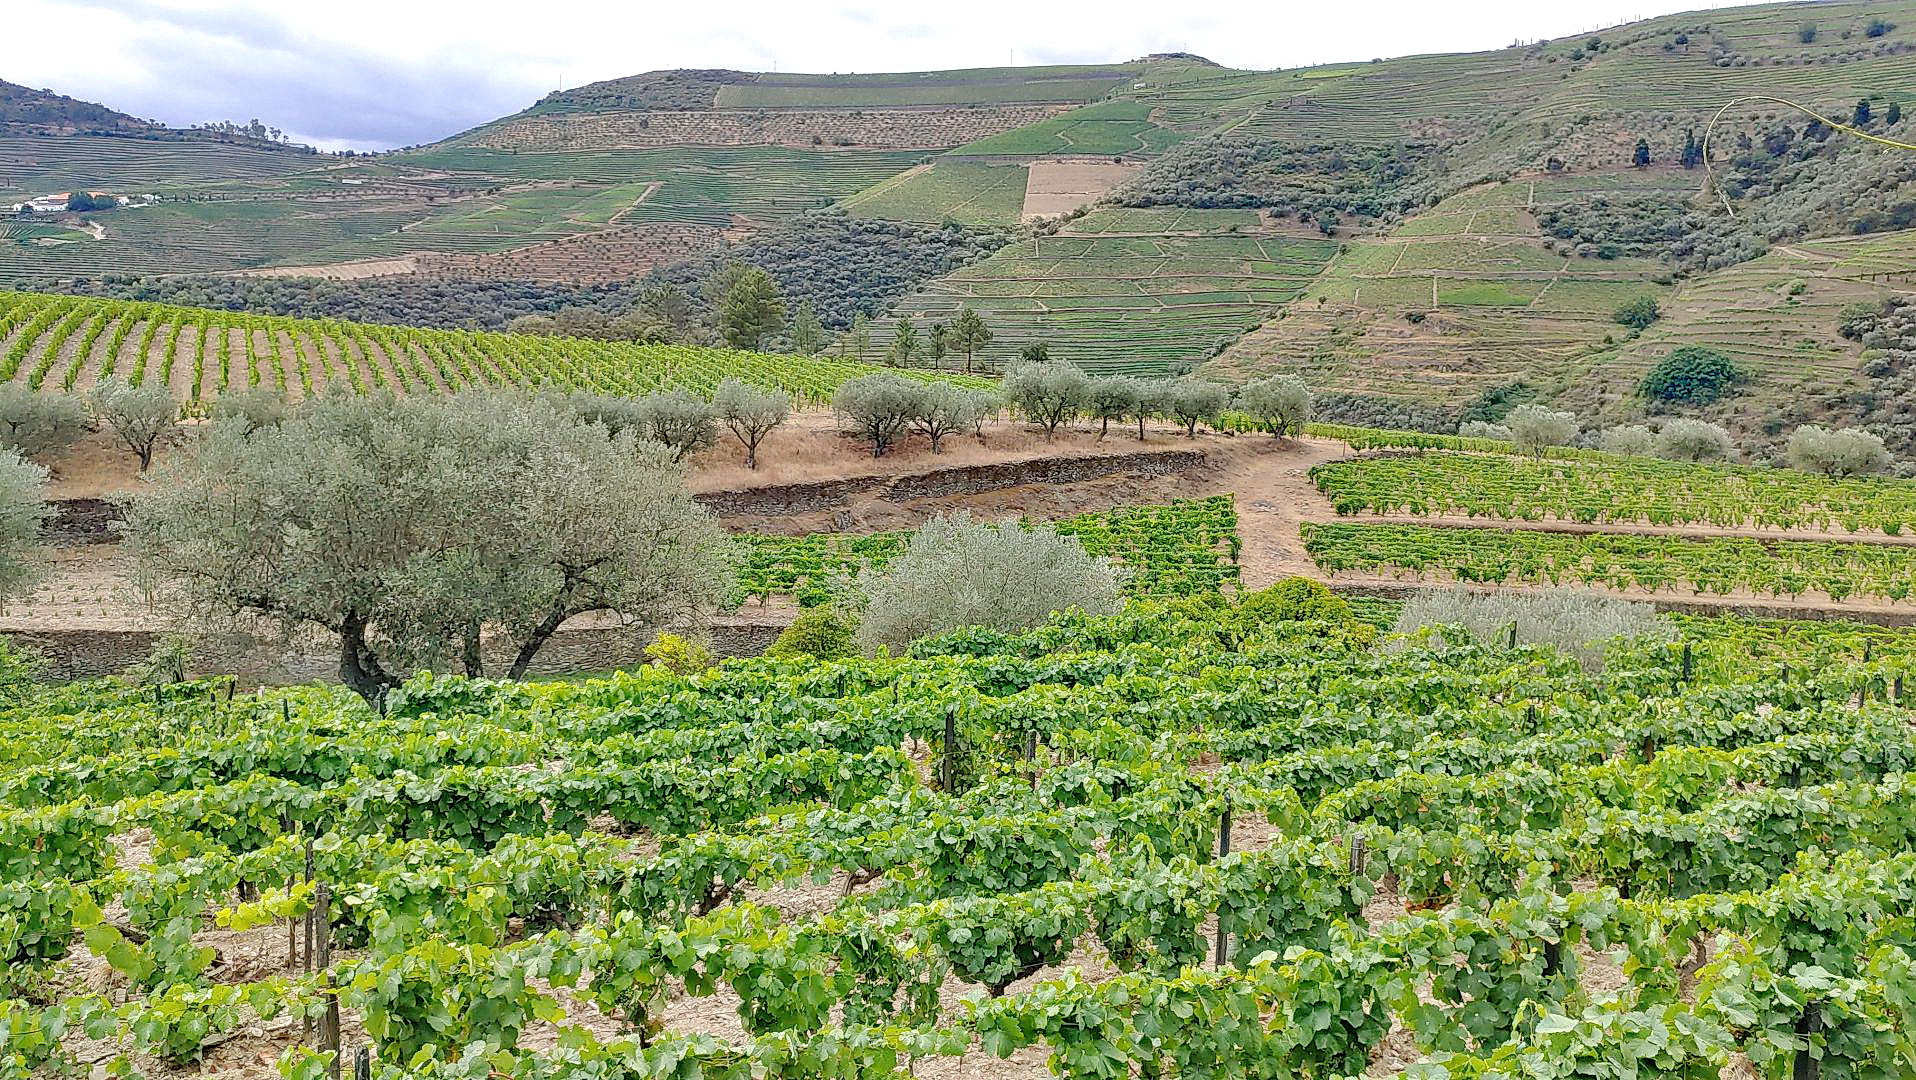 QUINTA DA ROEDA - wir sehen auch die ausgedehnten Weinberge, die im gesamten Anbaugebiet des Portweins nicht künstlich bewässert werden dürfen